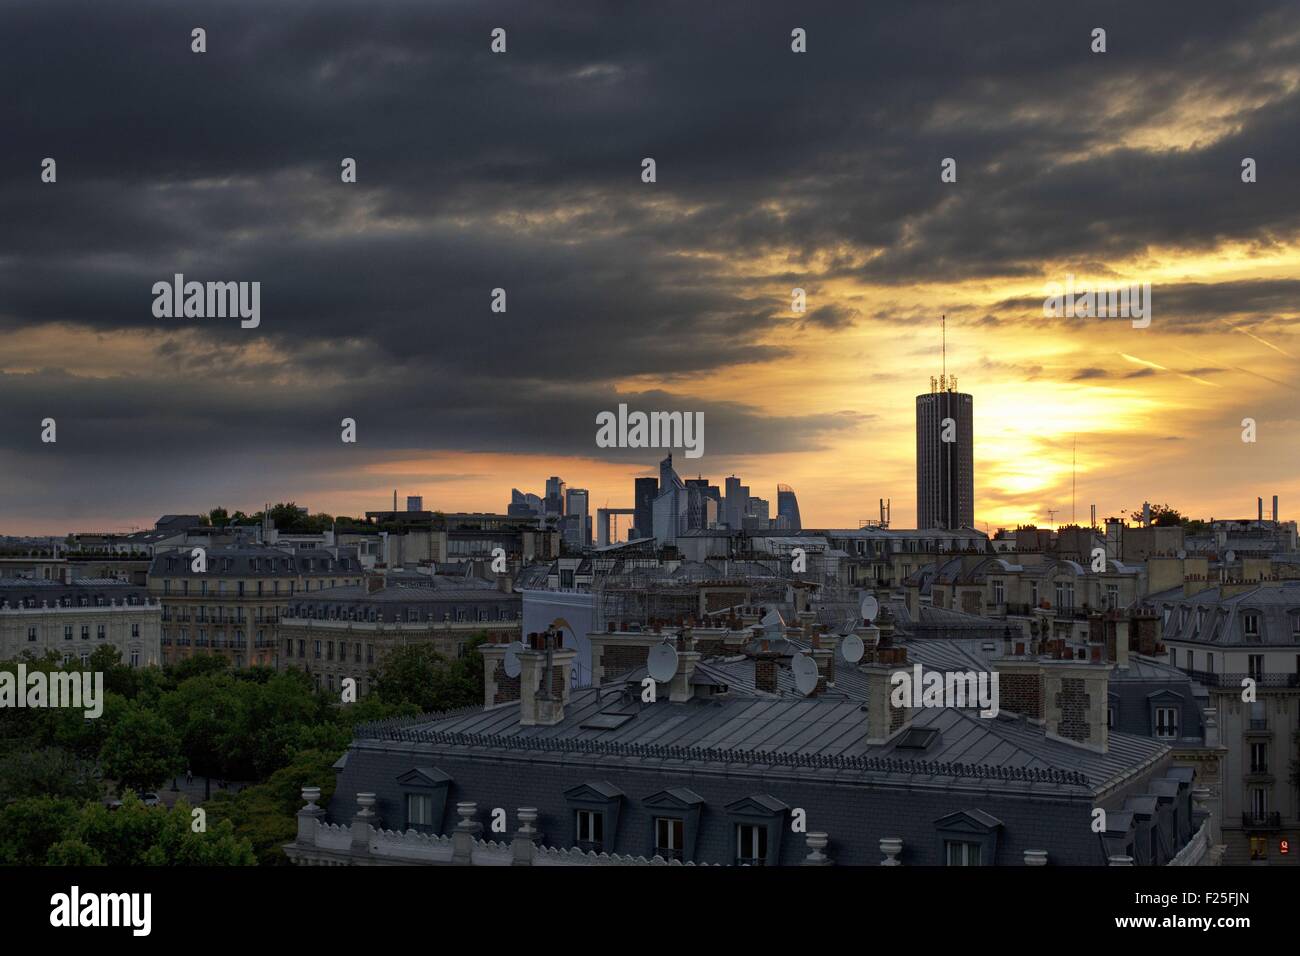 France, Paris, la Defense district and palais des congres Stock Photo